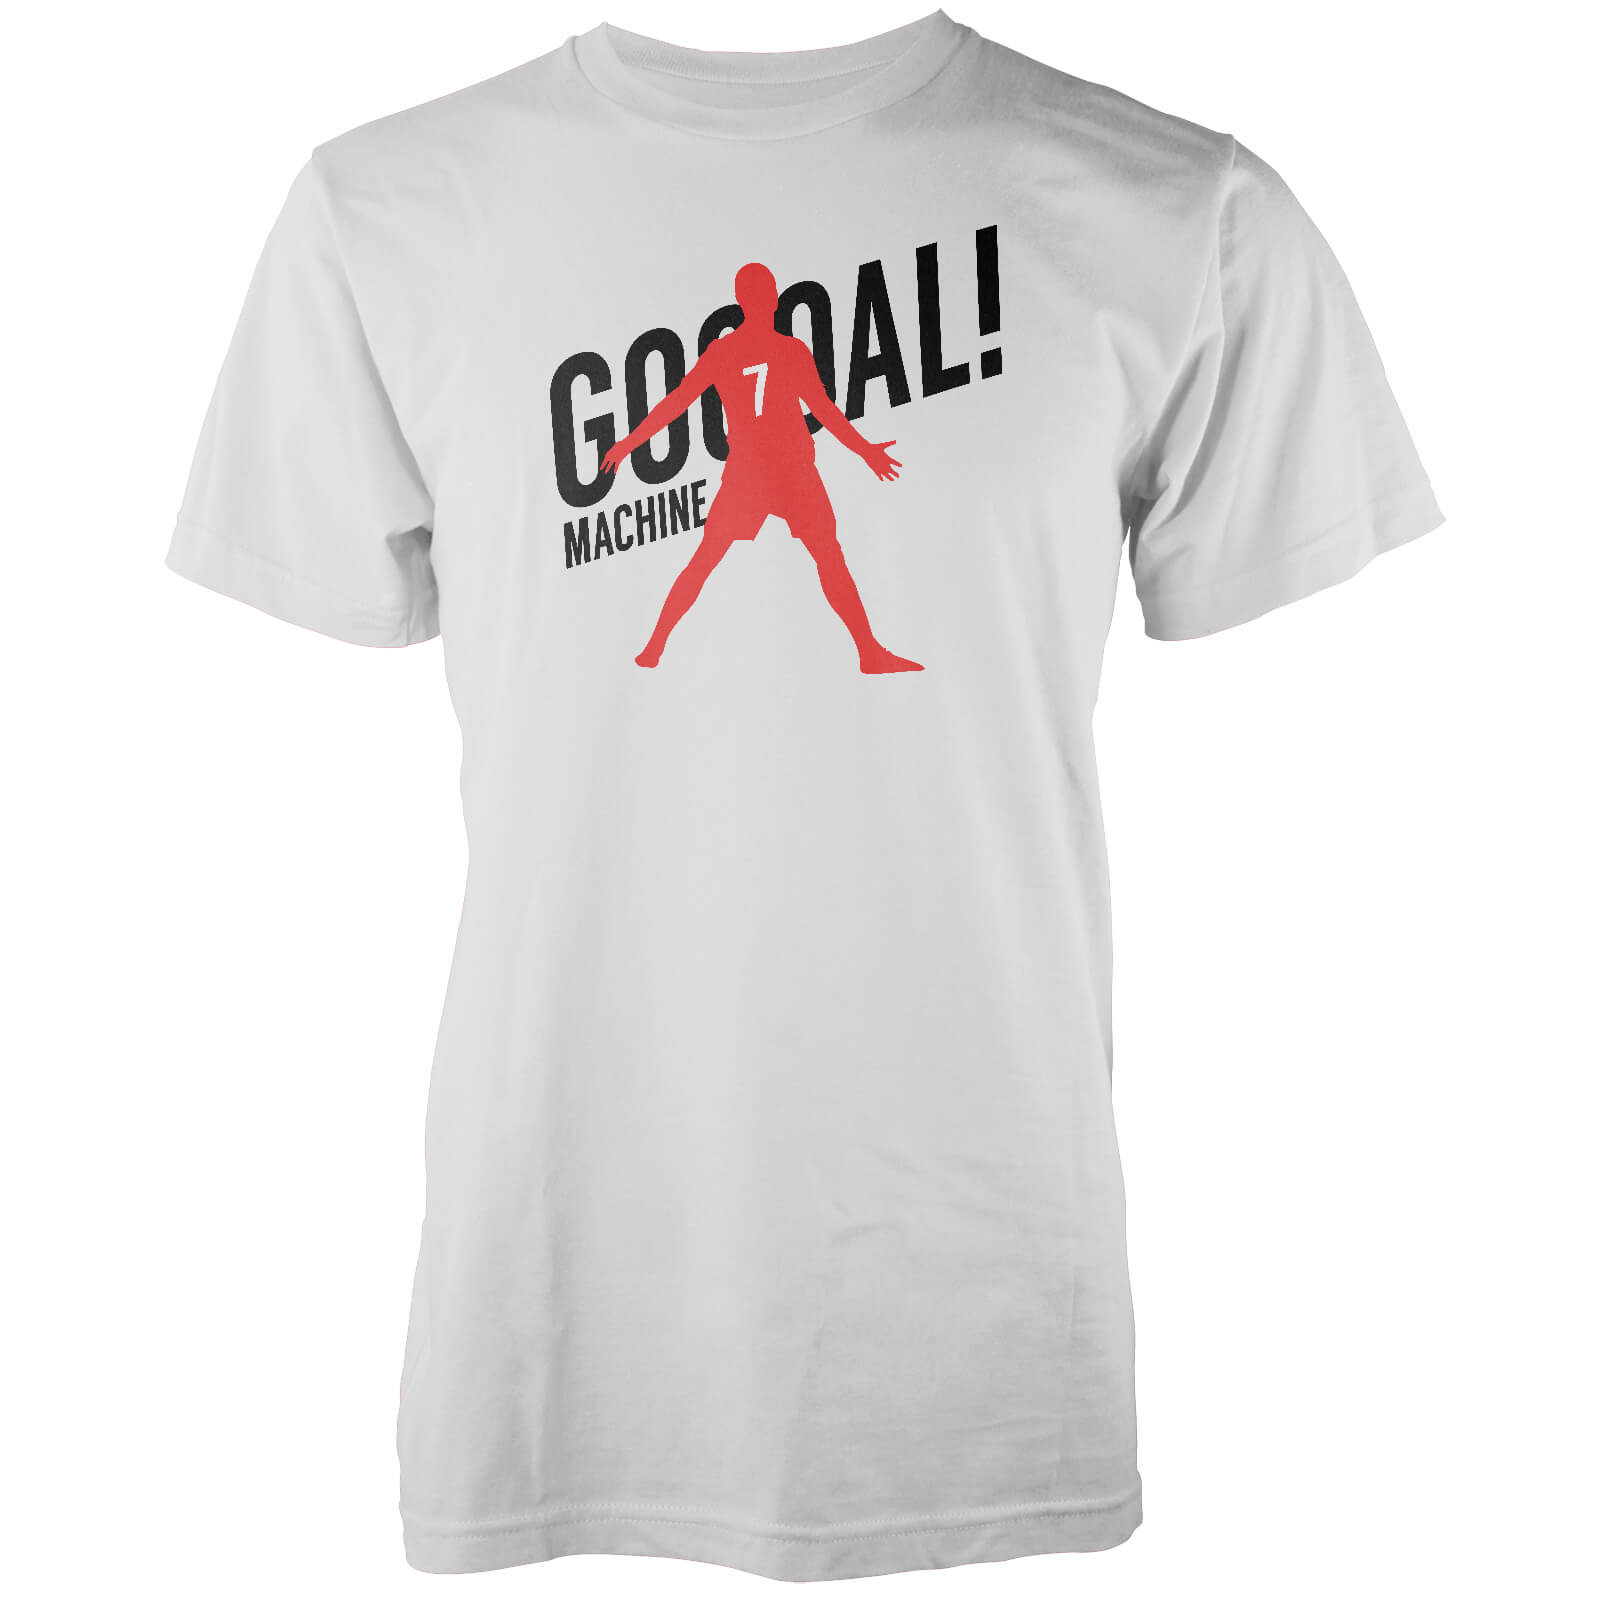 Goal Machine Men's White T-Shirt - S - White